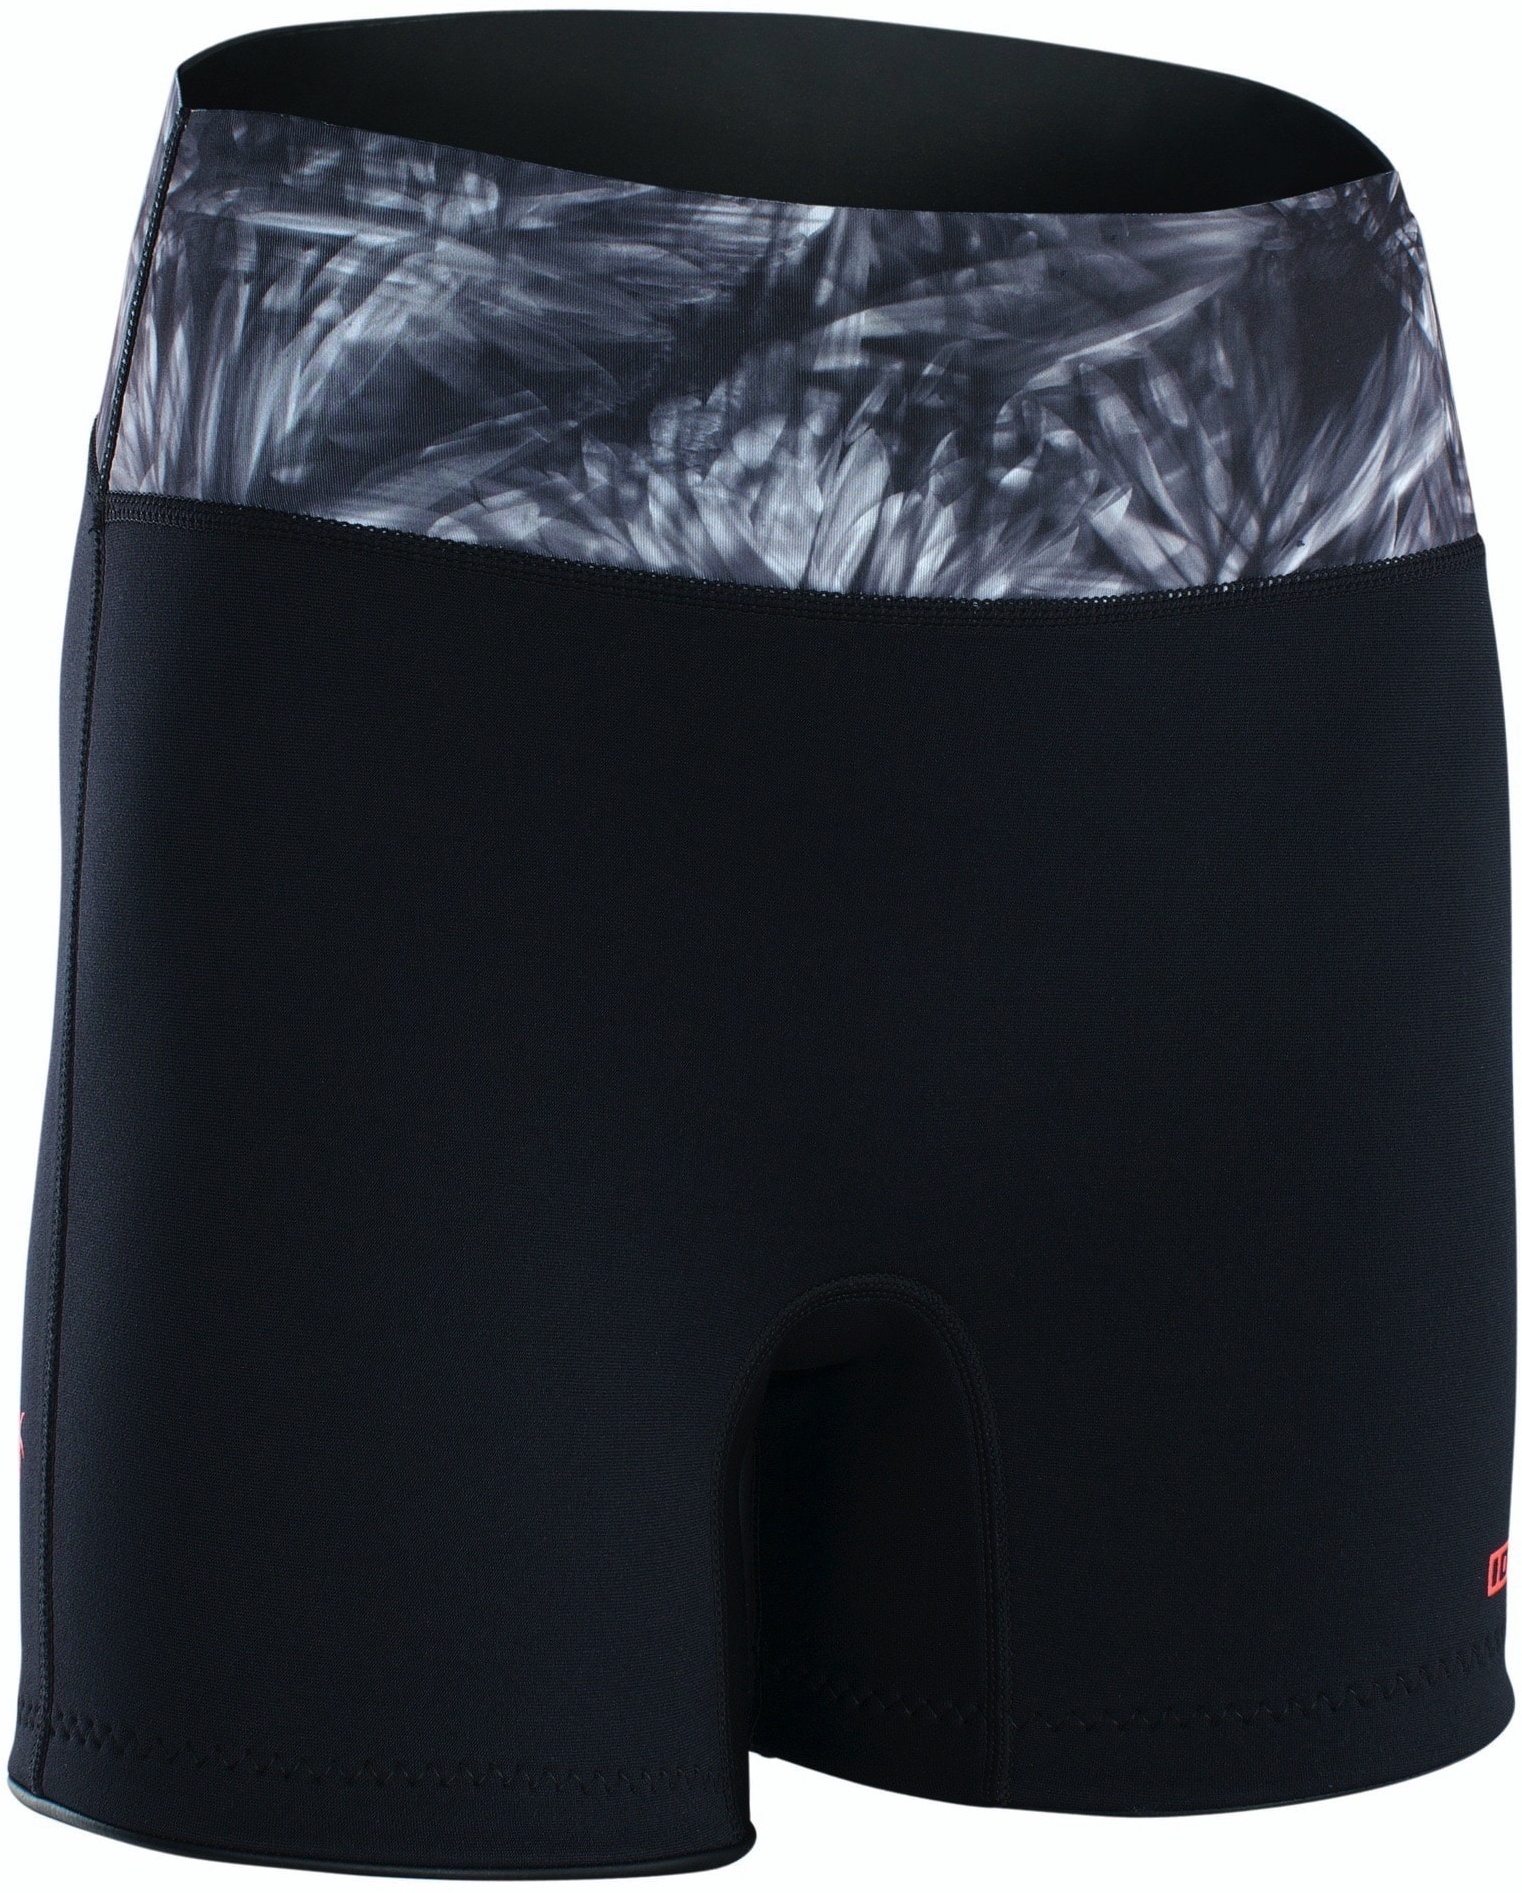 ION Neo Shorts Damen 23 Hose Warm Unterteil Rushguard Leicht, Größe: M, Farbe: 013 black-flowers